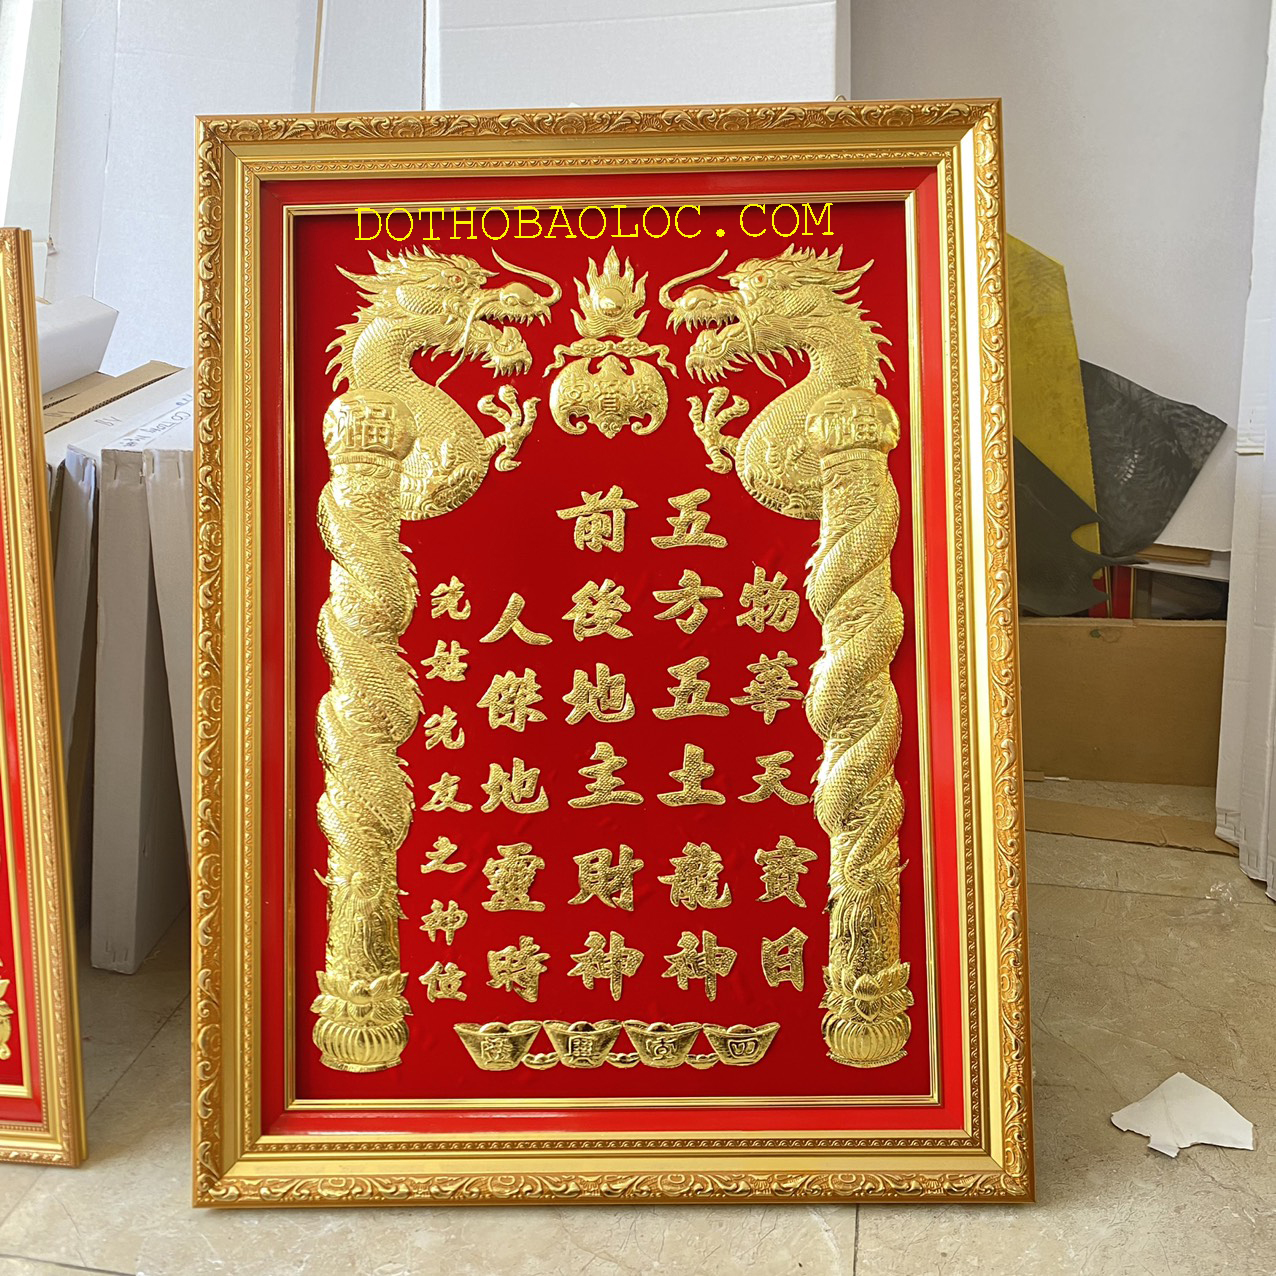 Bài vị Thần Tài Thổ Địa dát vàng 24 K 30cm x 38cm – Nền đỏ ( 2 loại: Có đèn và Không đèn) – Khung nhựa nhập khẩu